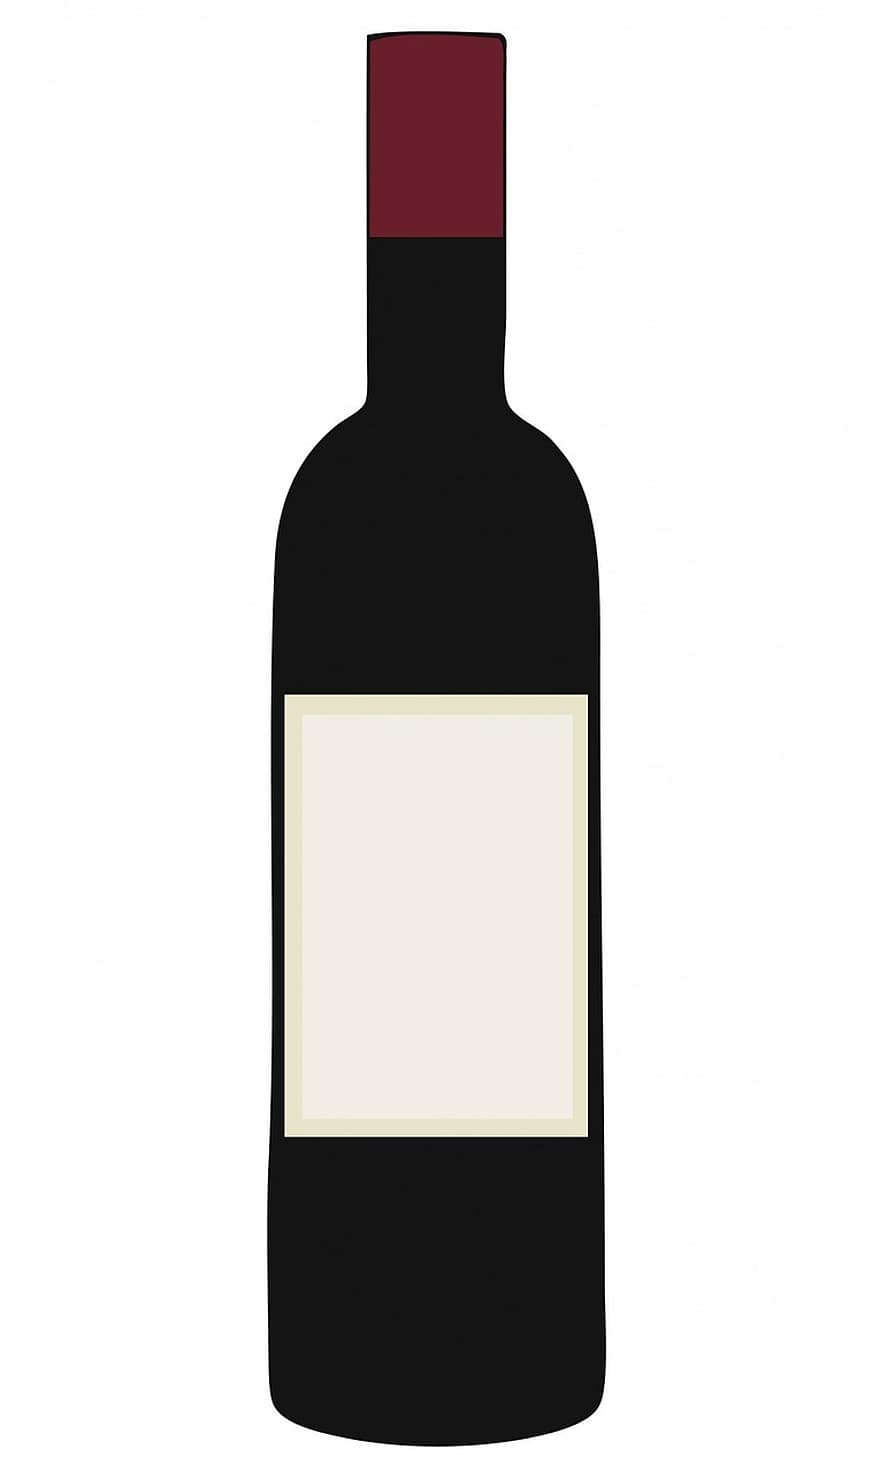 wijn, fles, rood, wijnfles, rode wijn, blanco, label, leeg etiket, Illustratie Glas